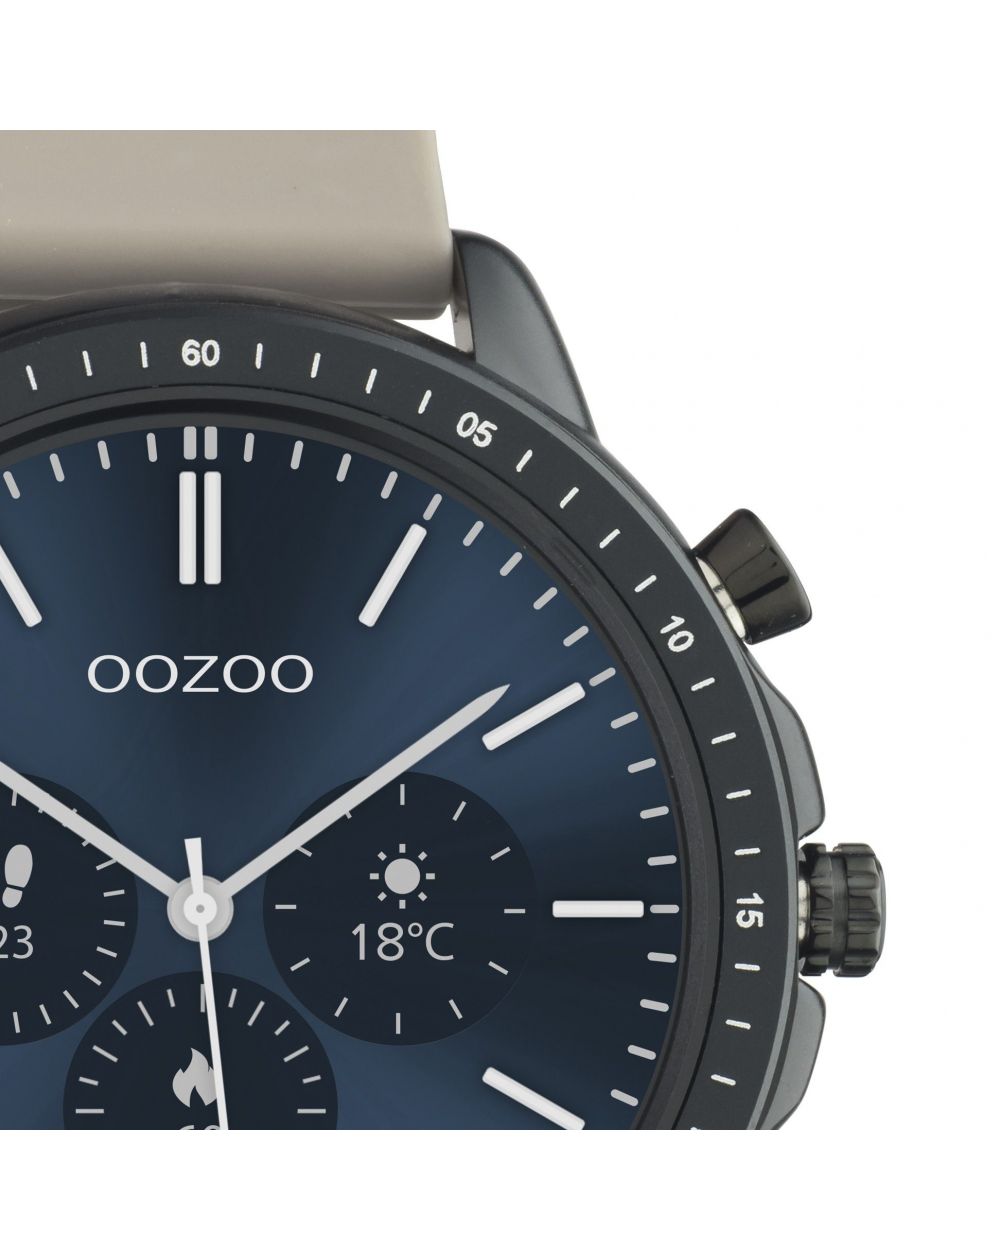 Montre Oozoo Q00330 - Smartwatch - Marque OOZOO - Livraison gratuite